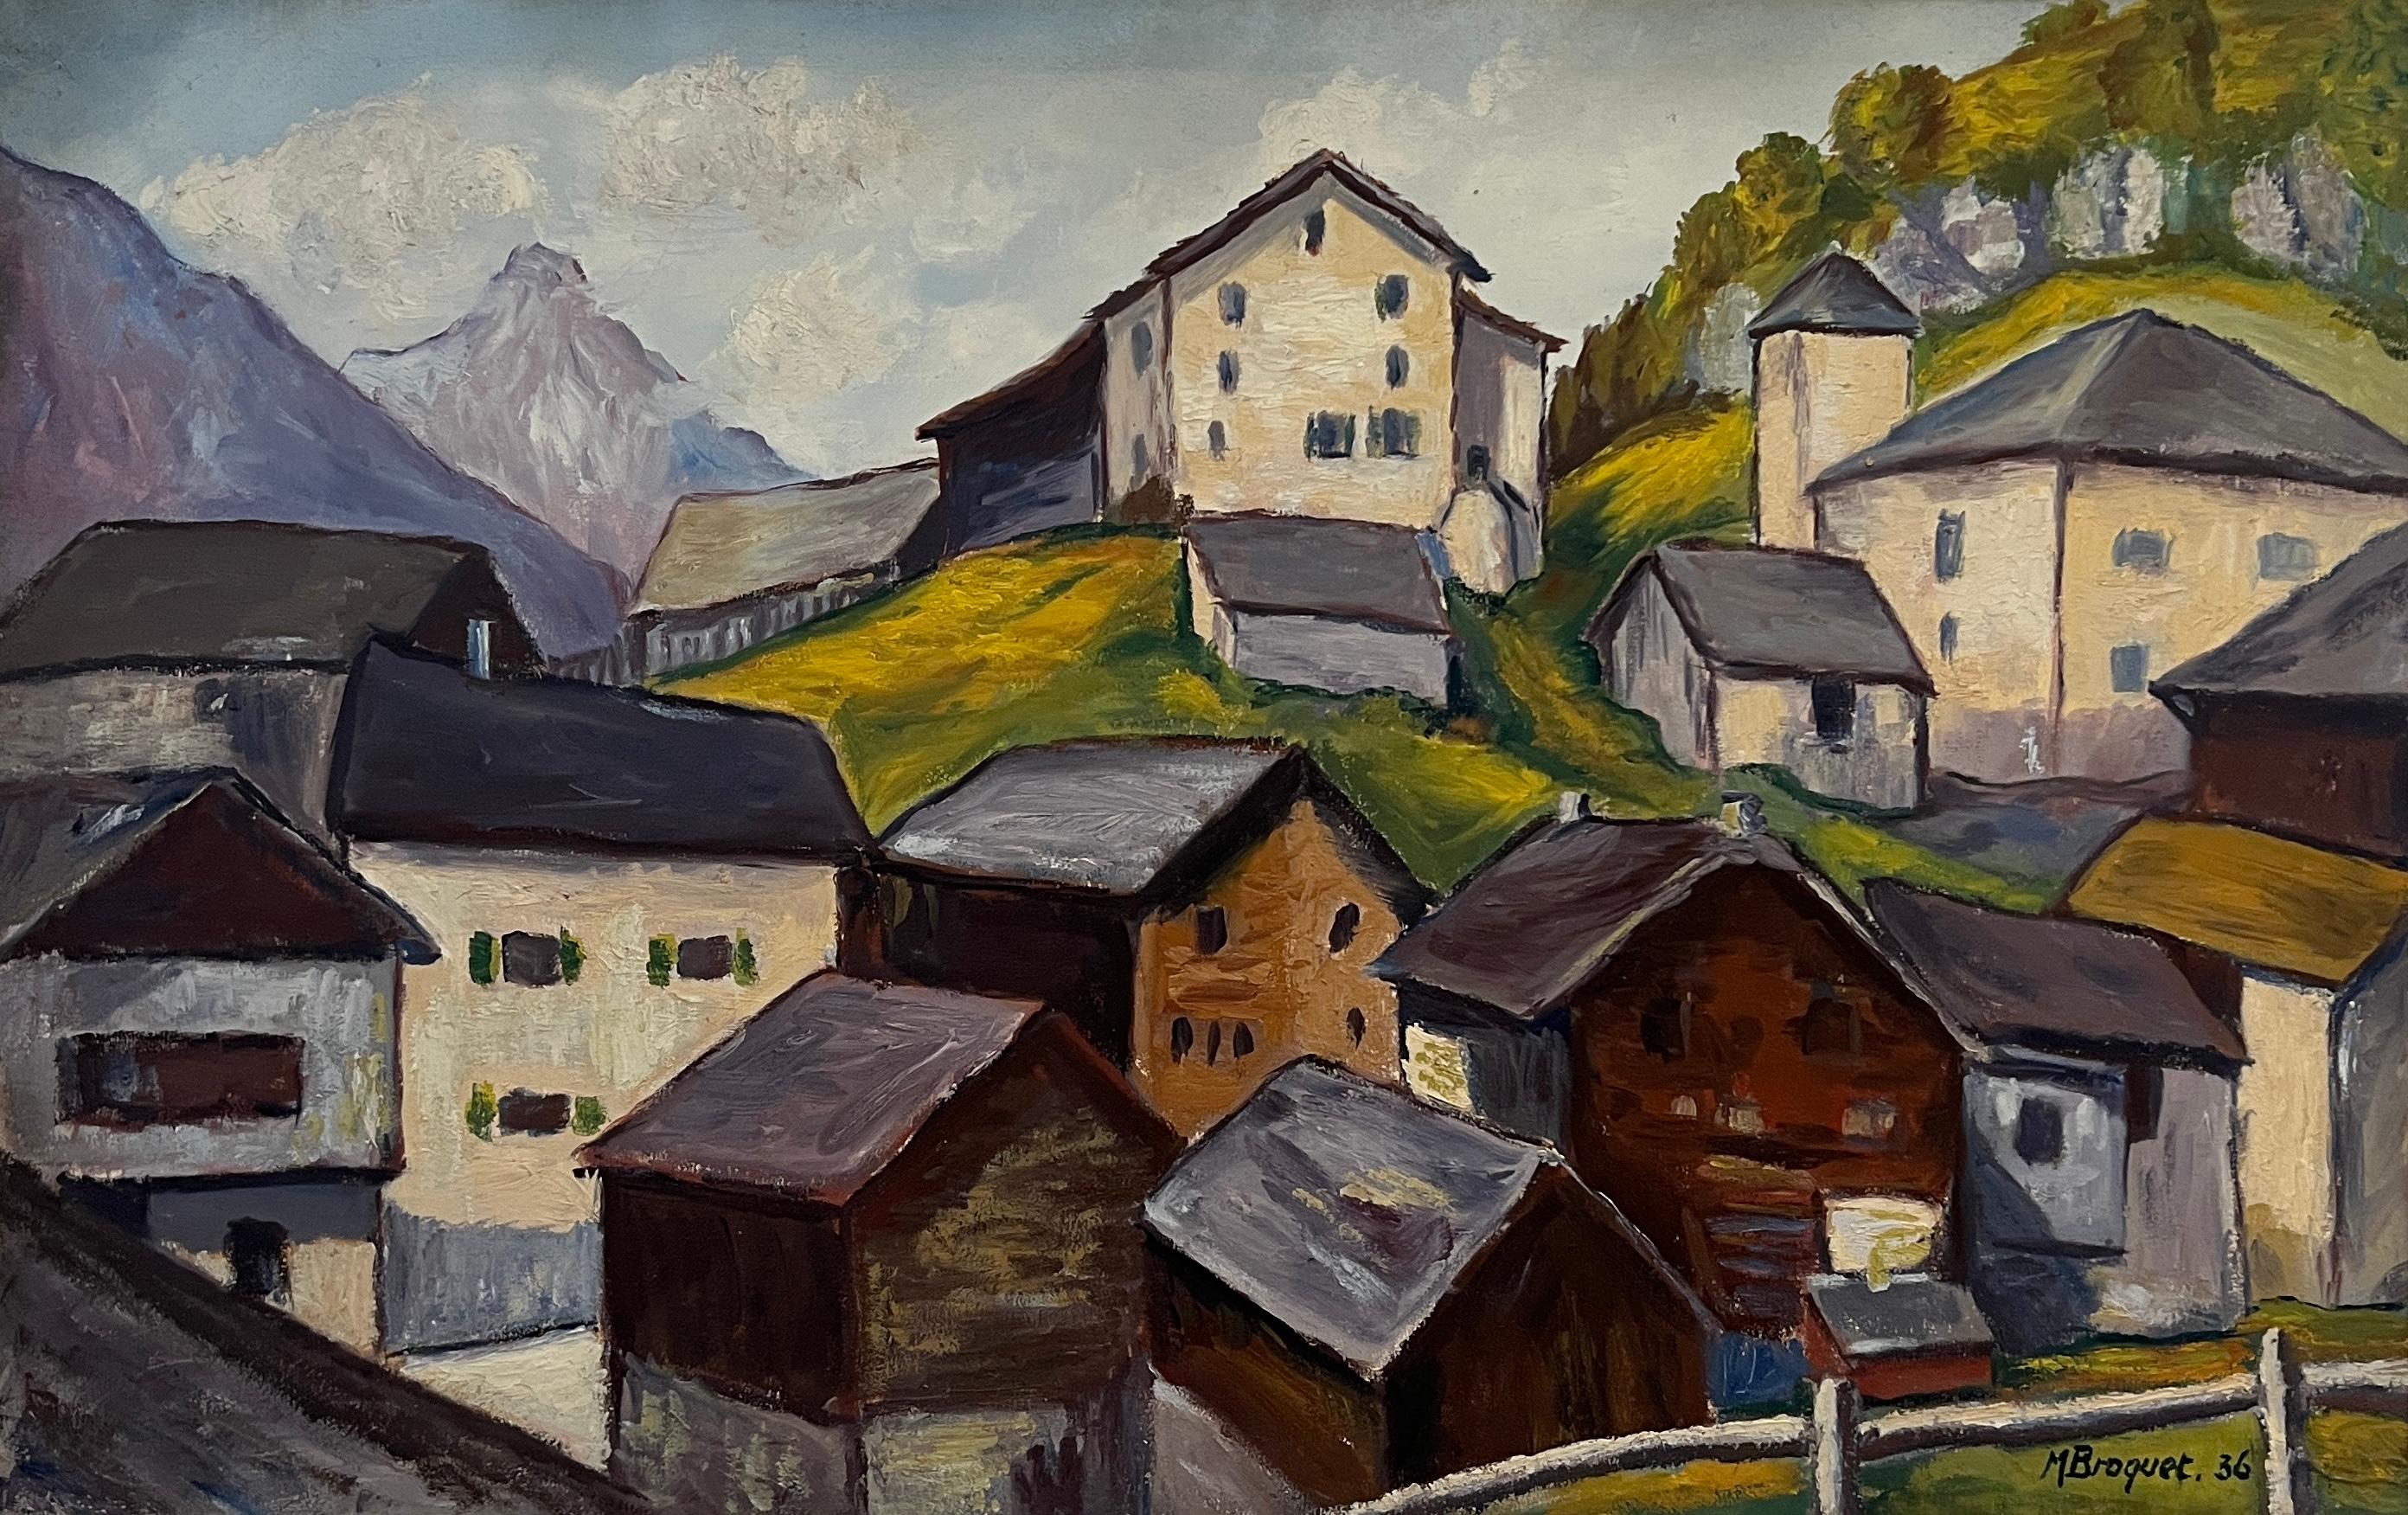 M. Broquet Landscape Painting - Mazots and Matterhorn